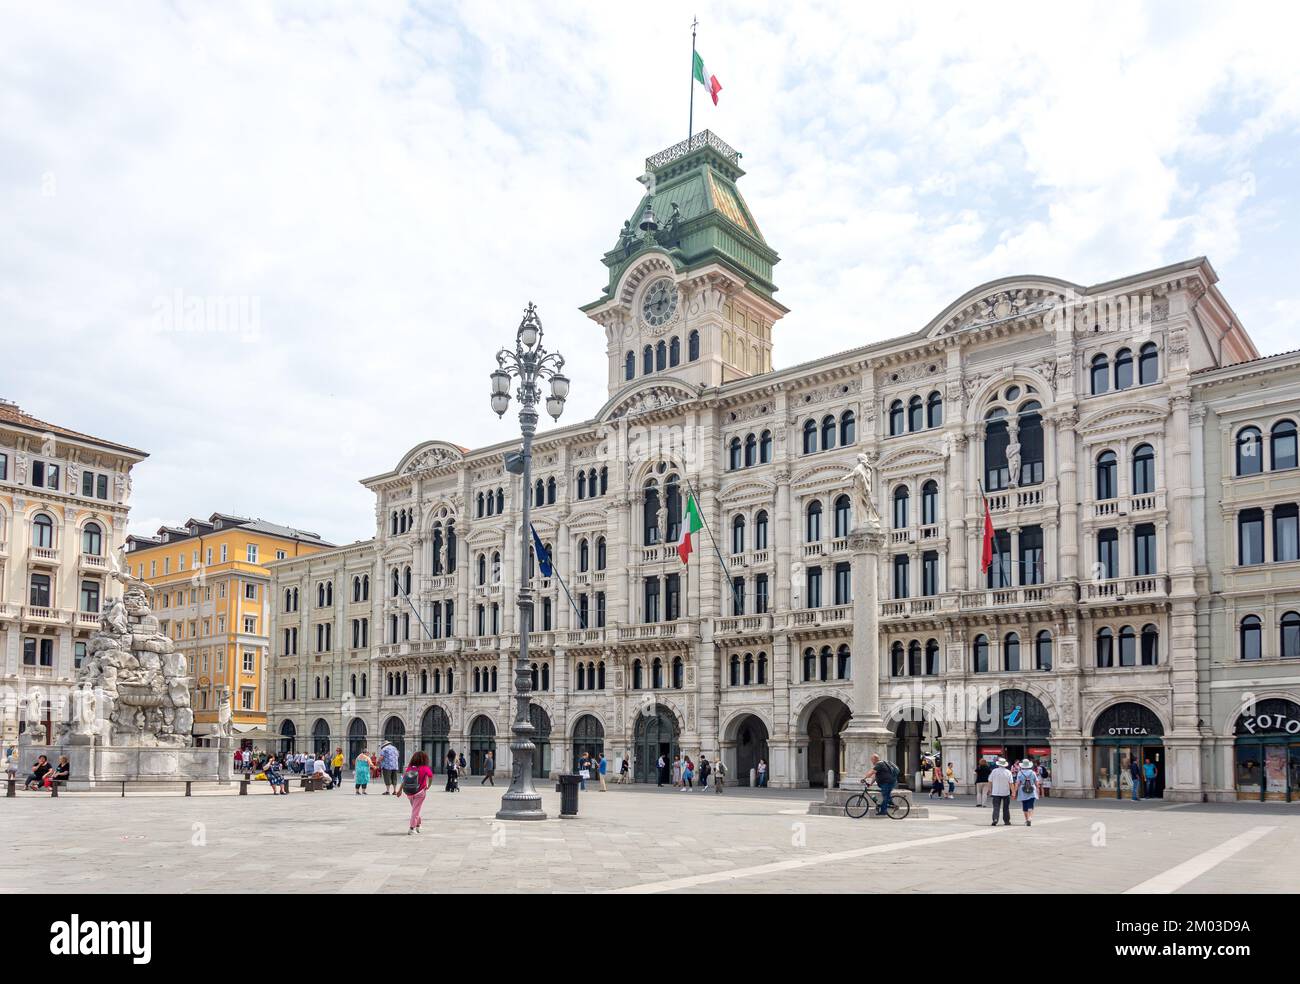 Palazzo del Municipio di Trieste (Town Hall), Piazza Unita d'Italia (Unity of Italy Square), Trieste, Friuli Venezia Giulia Region, Italy Stock Photo